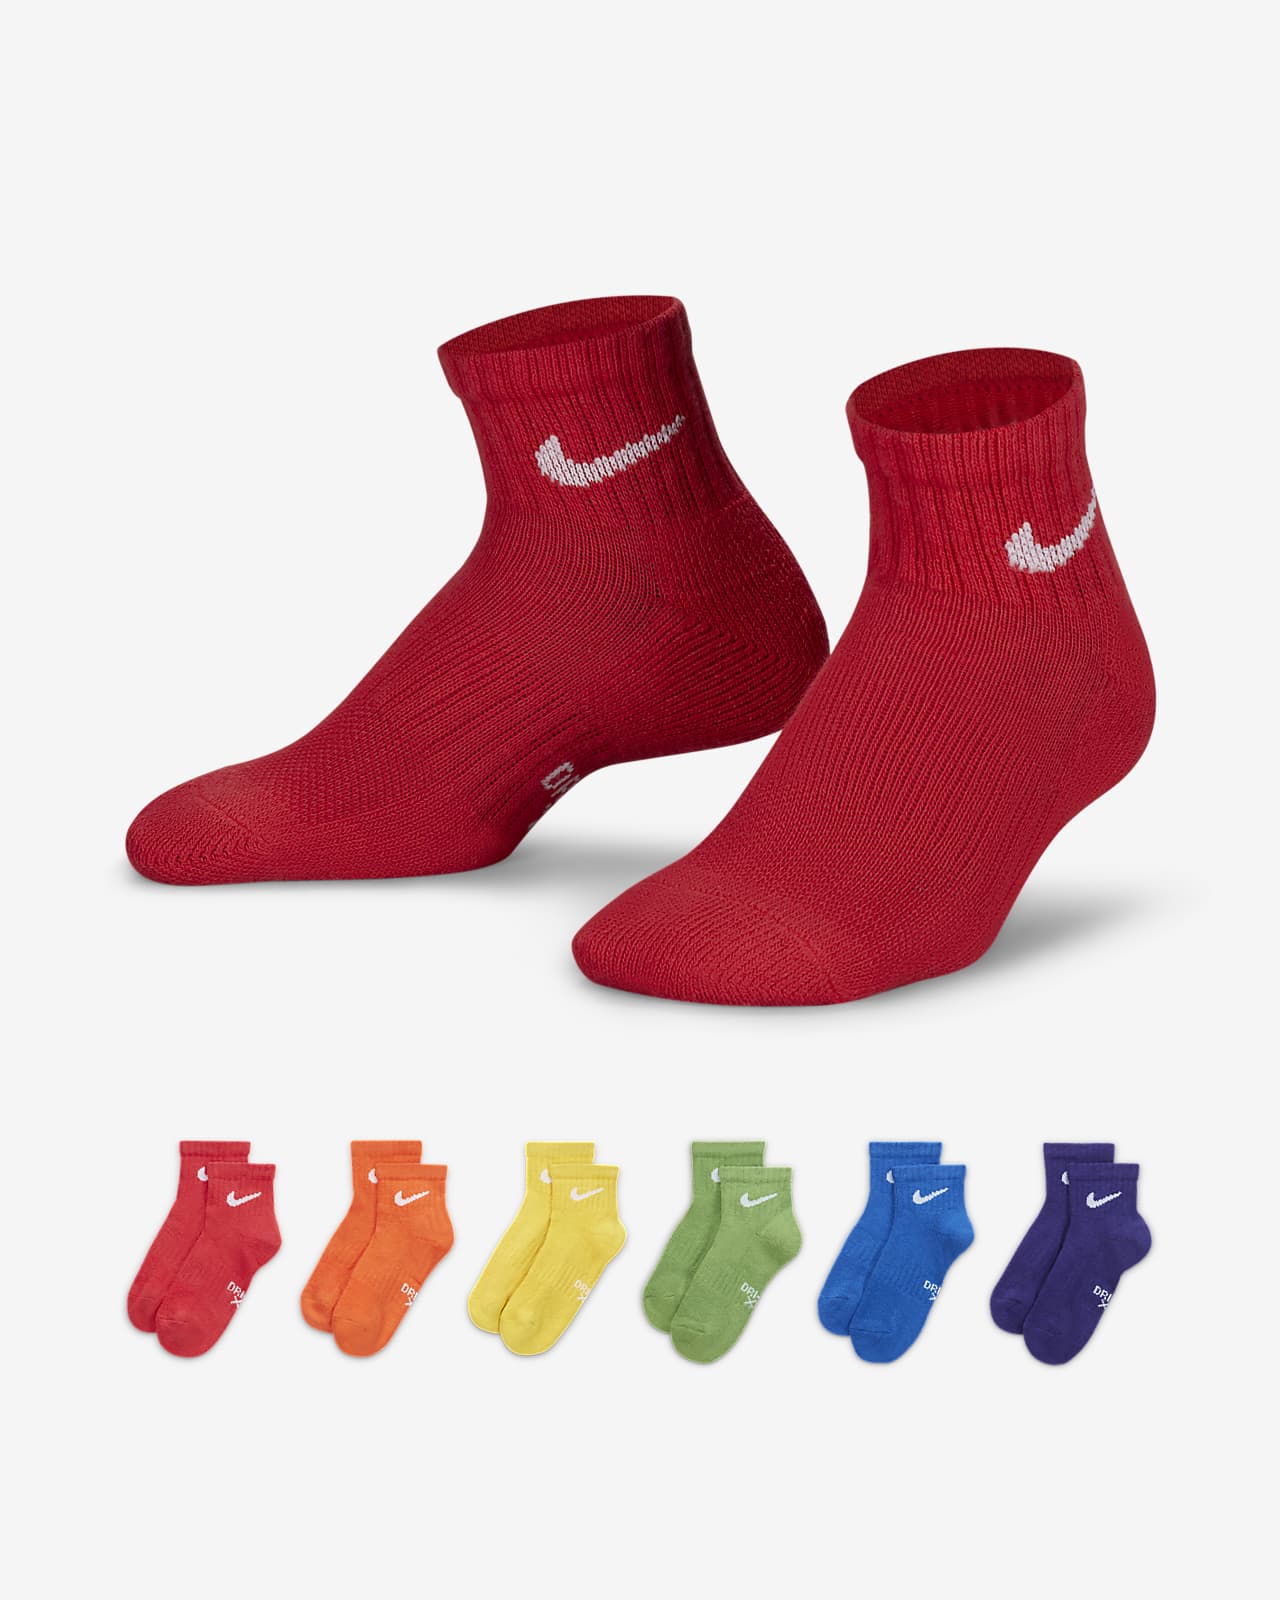 Calze alla caviglia Nike Dri Fit – Bambino/a (confezione da 6)